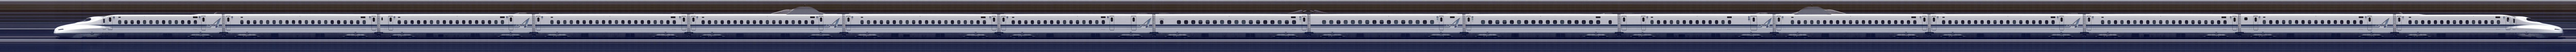 新幹線 N700系